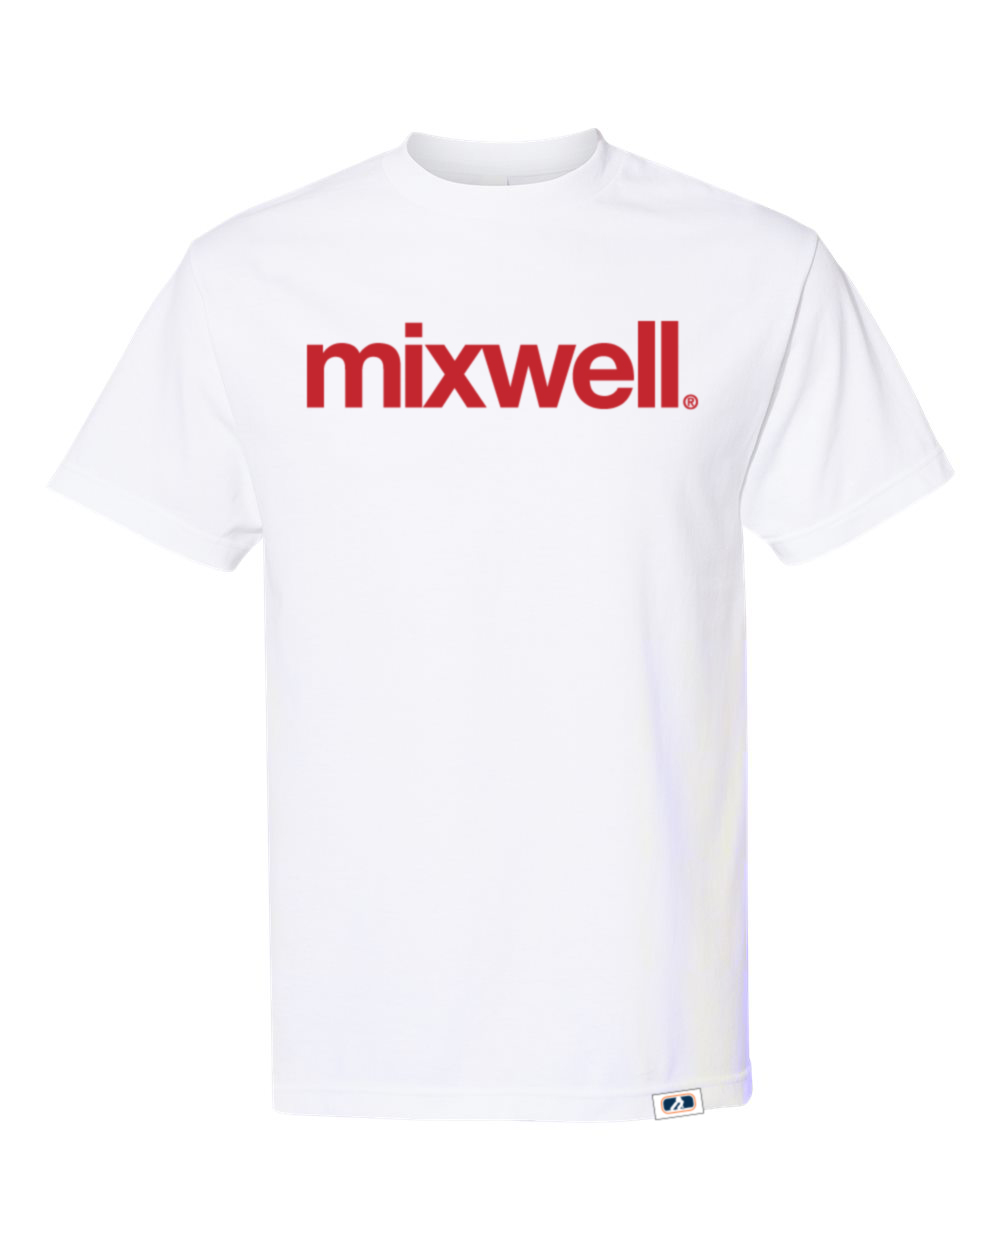 MIXWELL Eyedee T shirt